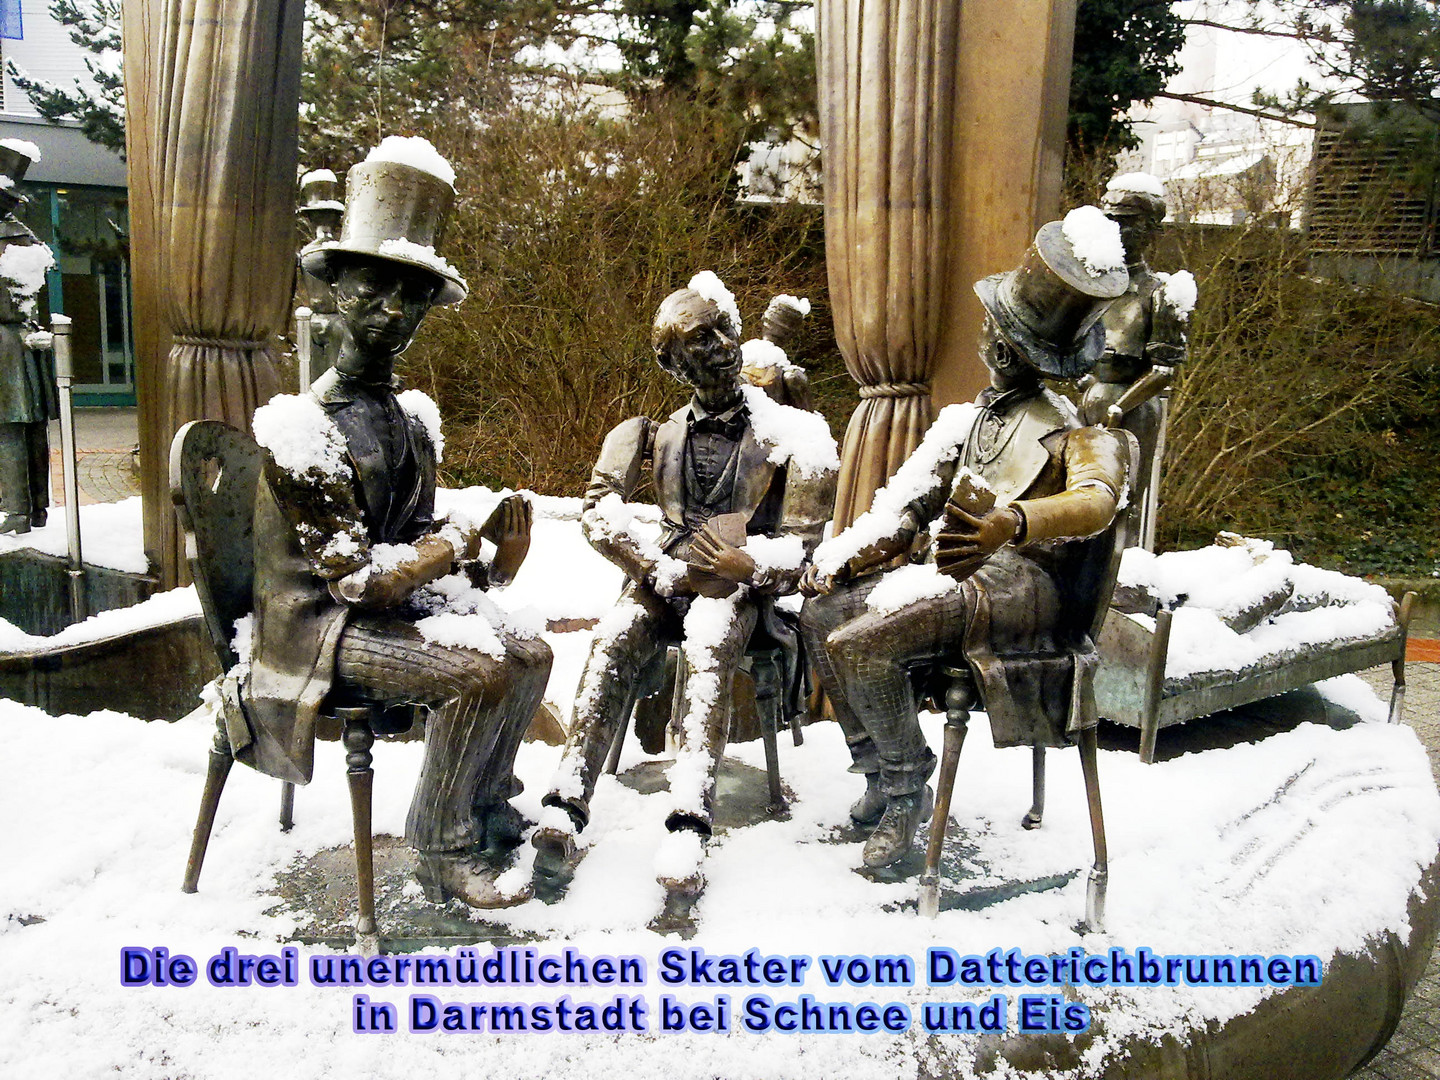 Die drei unermüdlichen Skater vom Datterichbrunnen in Darmstadt